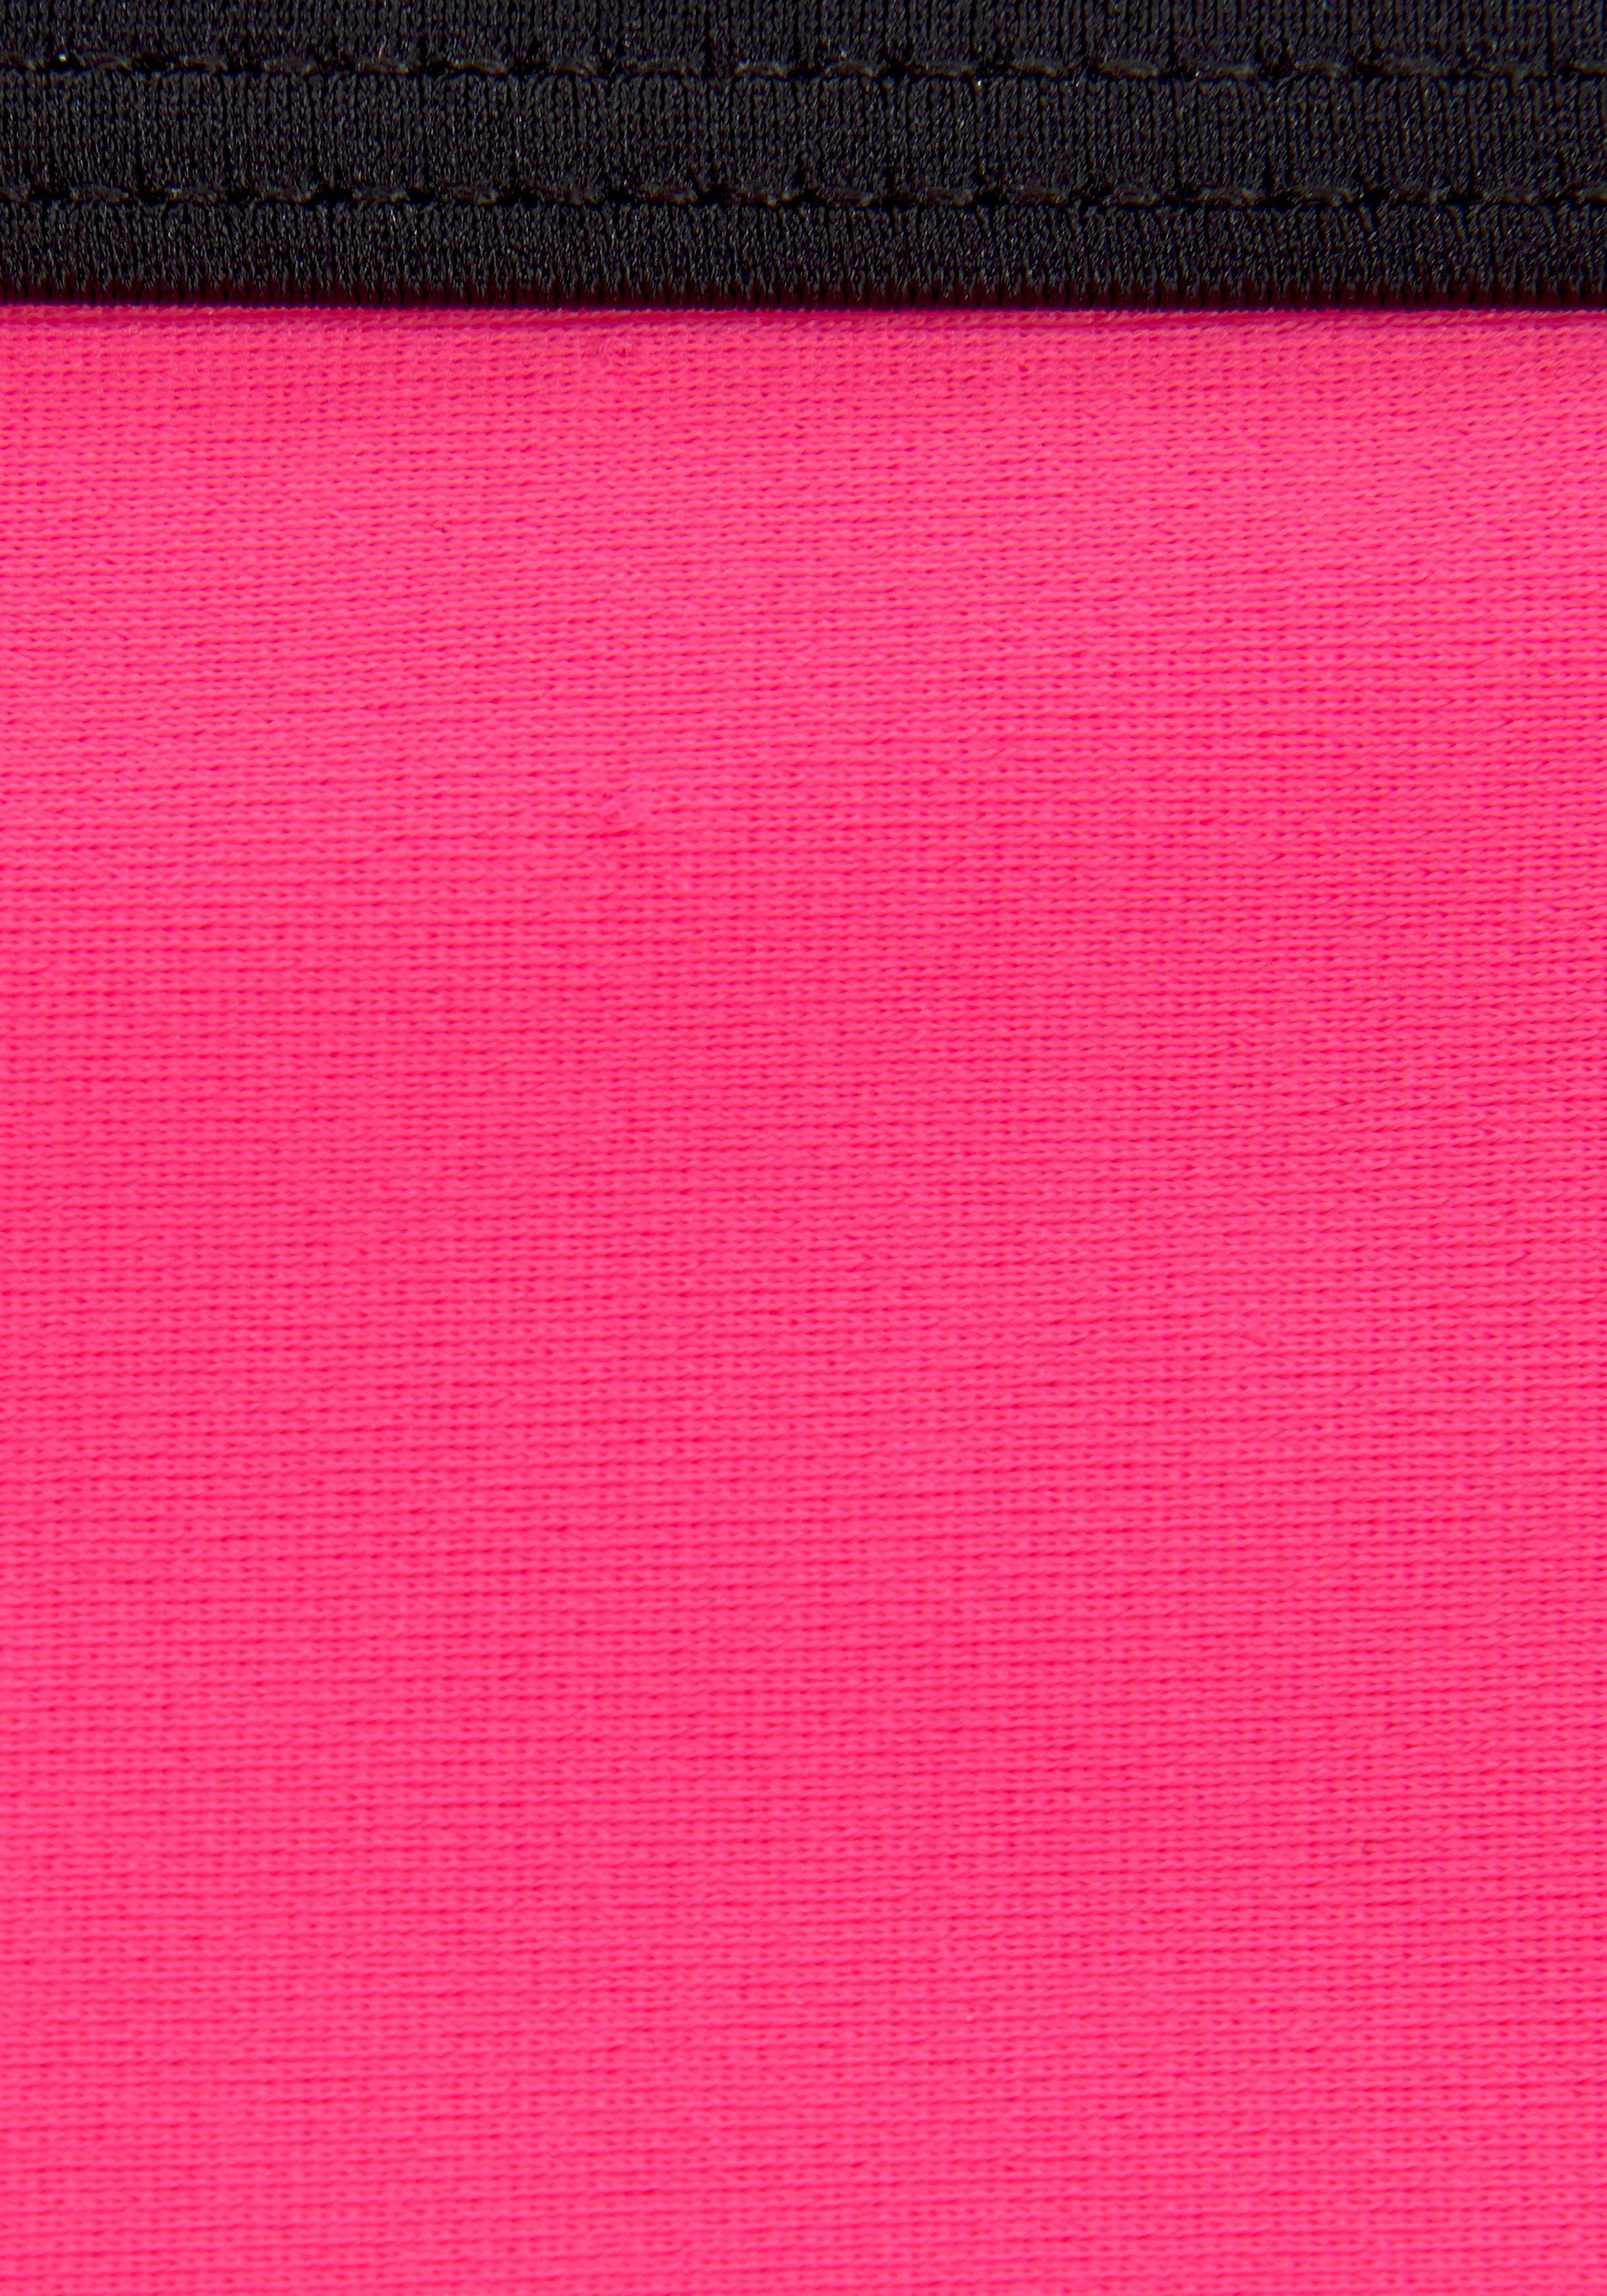 mit Logoprint an Bench. Hose pink-schwarz und Triangel-Bikini Top